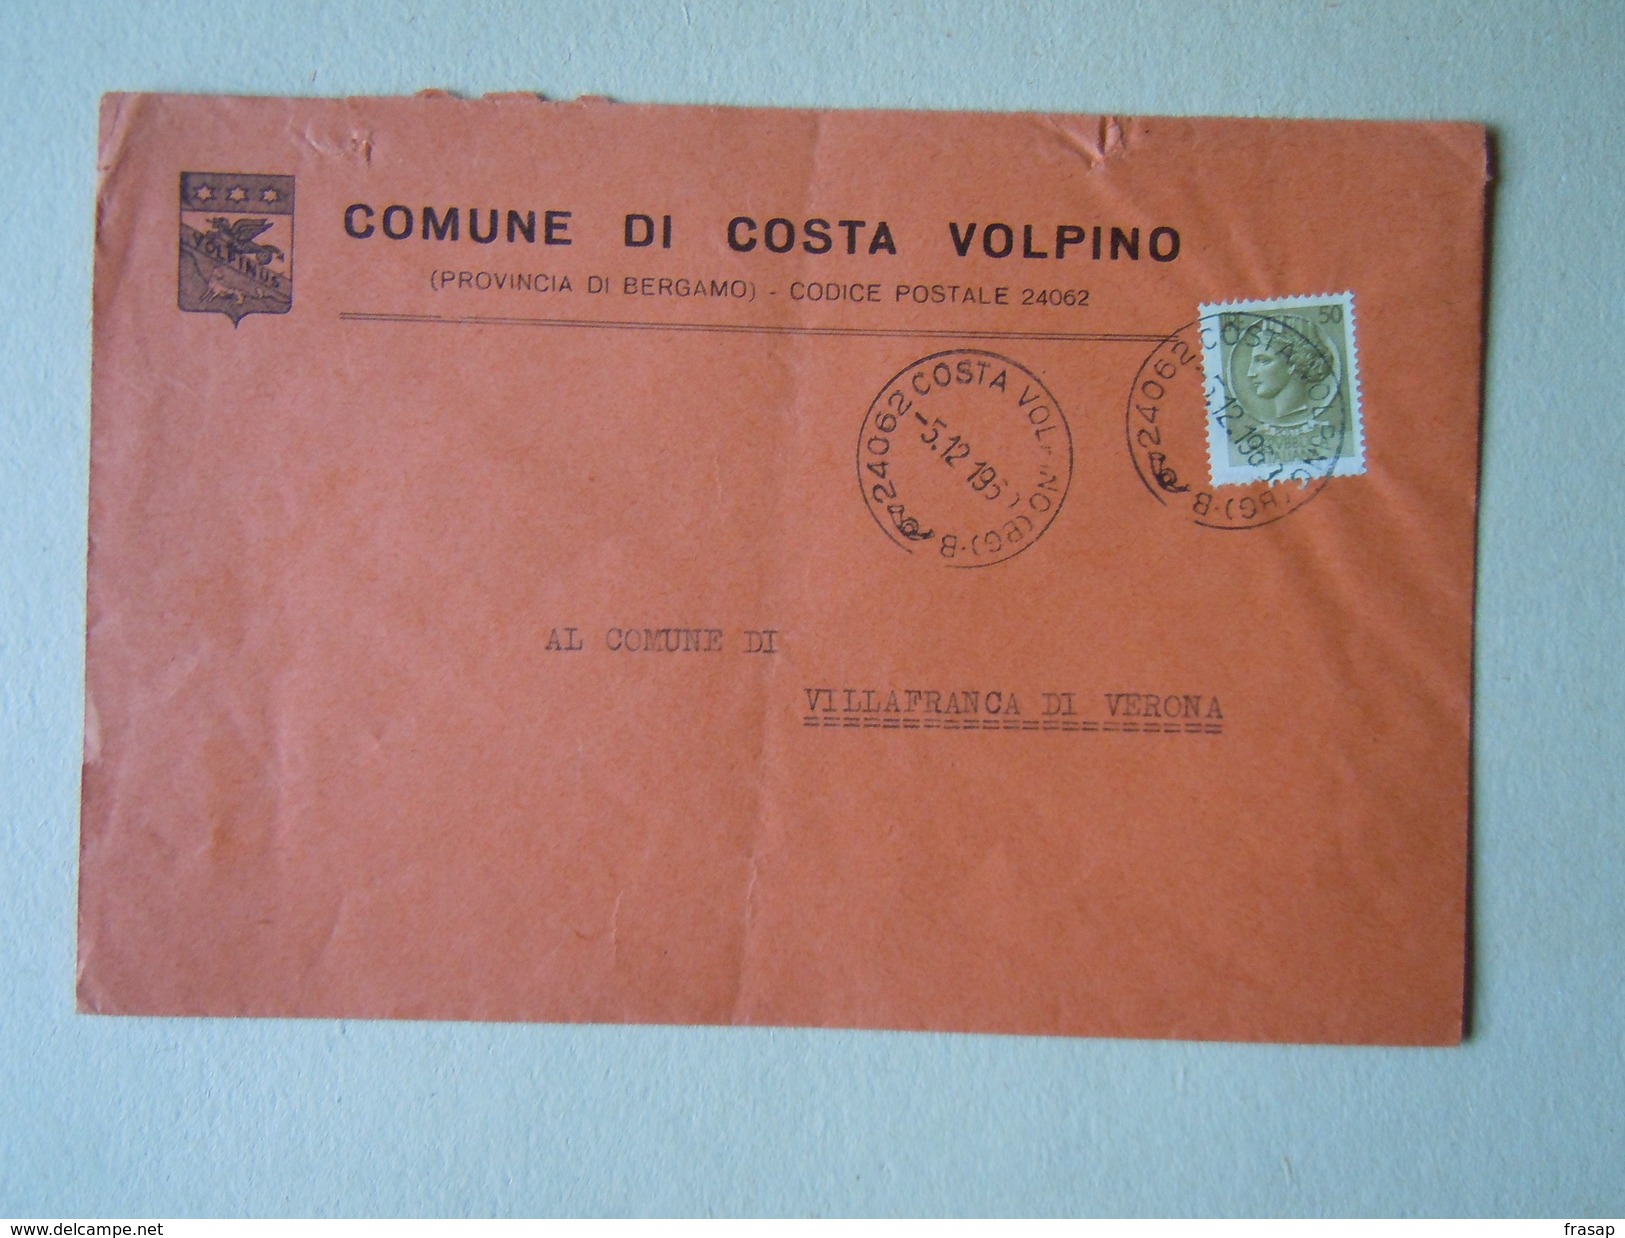 TEMATICA BUSTE COMUNALI - COMUNE D COSTA DI VOLPINO    1969 - Buste